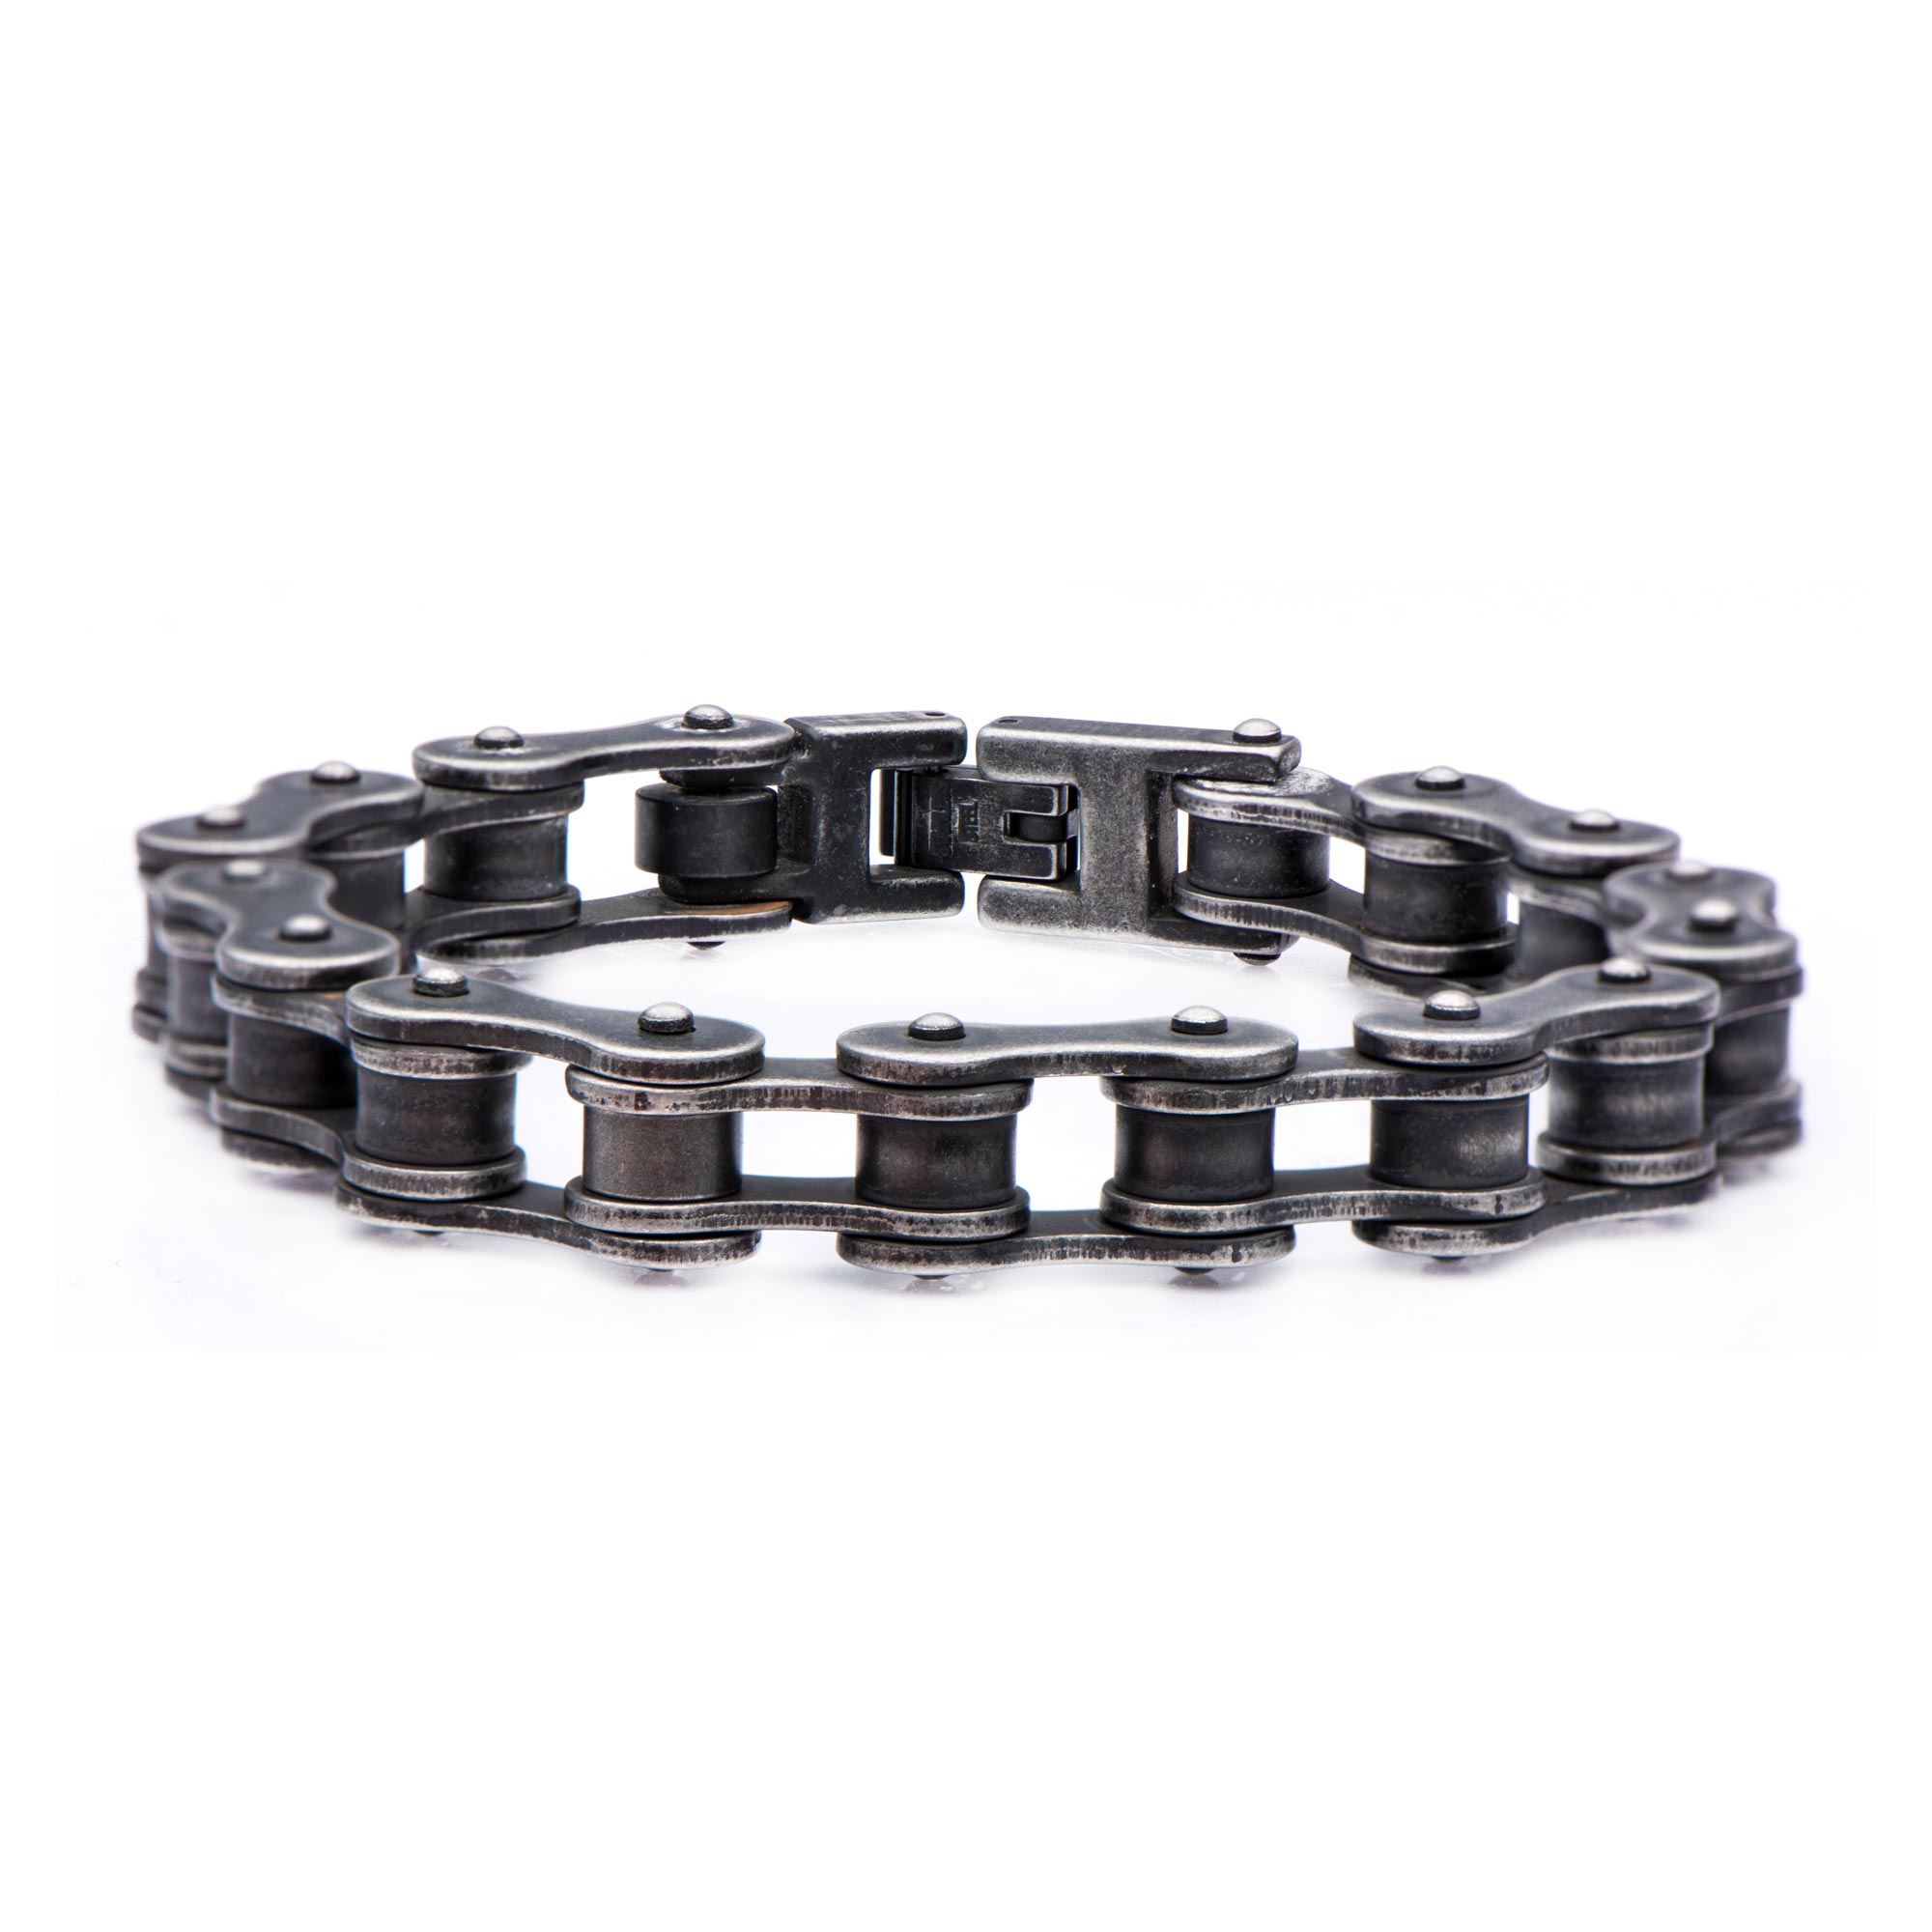 Stainless Steel Motor Chain Bracelet Carroll / Ochs Jewelers Monroe, MI